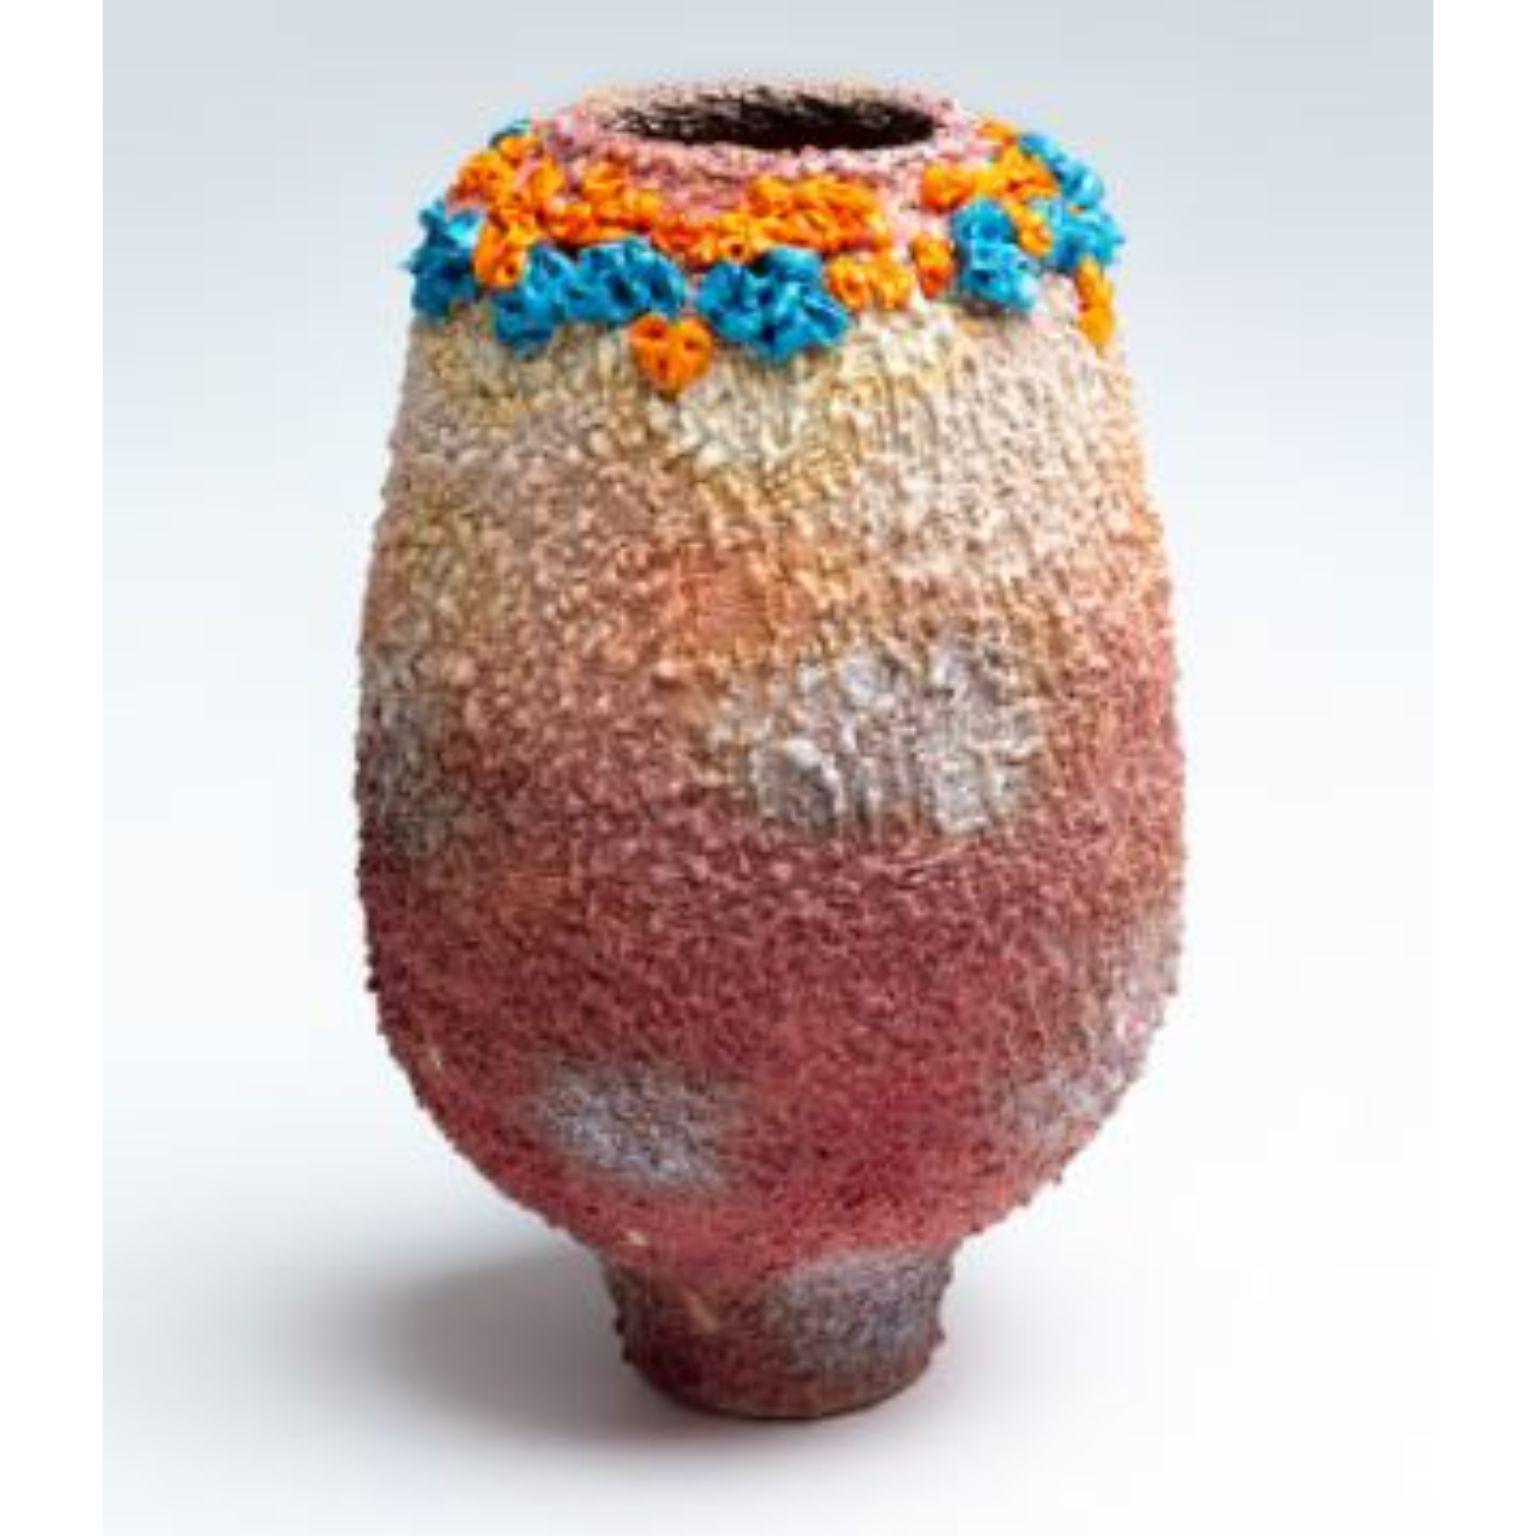 Gelbe Bling-Vase von Arina Antonova
Abmessungen: H 40 x T 20 cm
MATERIALIEN: Steingut, Porzellan, Pigmente.

Geboren in Sewastopol (Krim), war ich umgeben von der natürlichen Vielfalt der Schwarzmeerküste mit ihren felsigen Stränden und